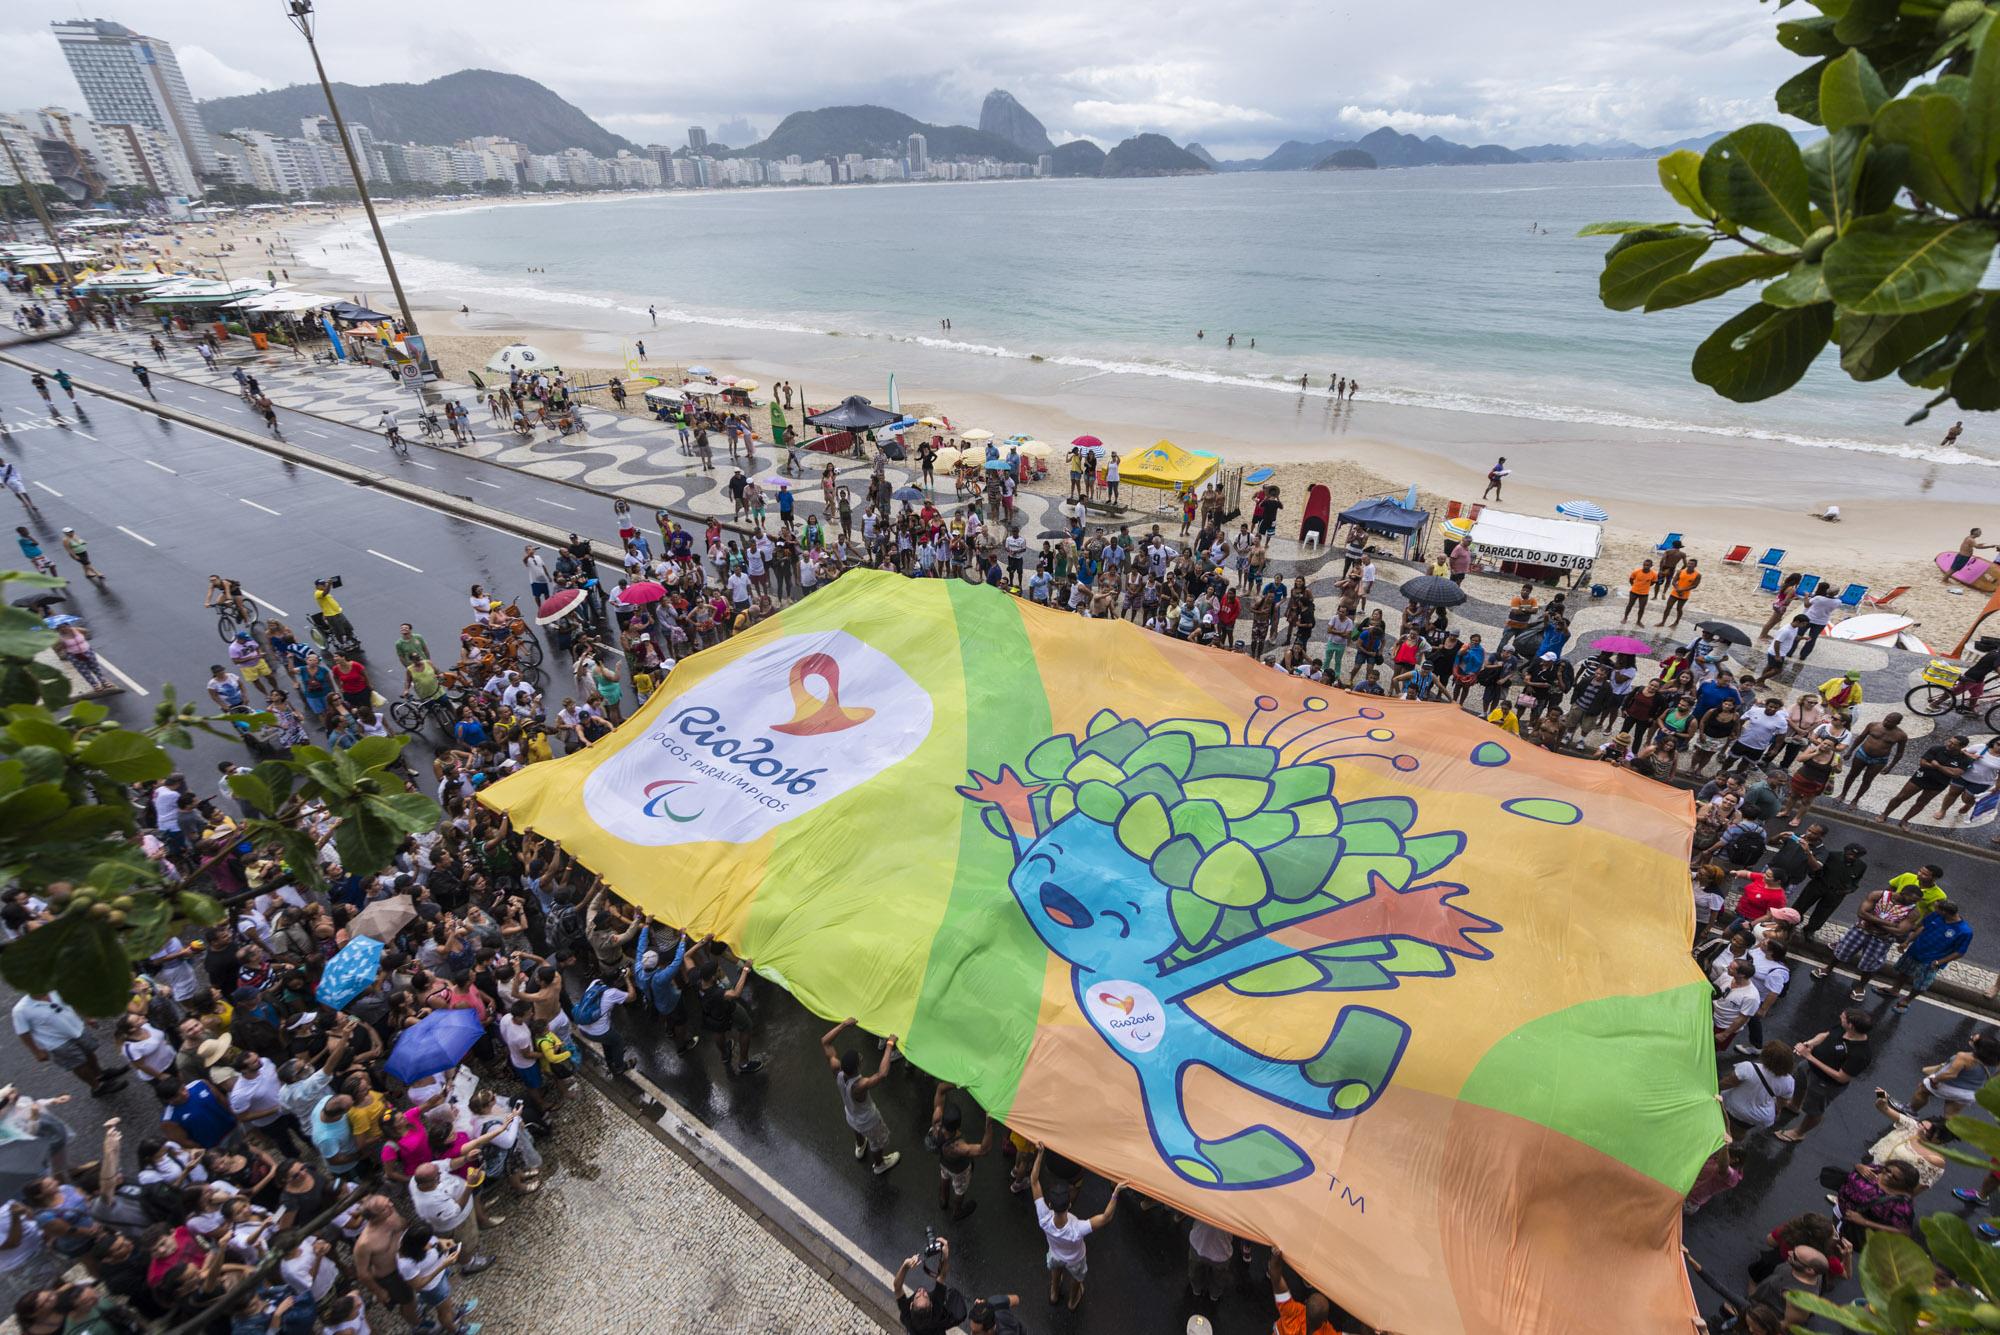 Olimpiadi di Rio 2016: 10 curiosità che non conosci